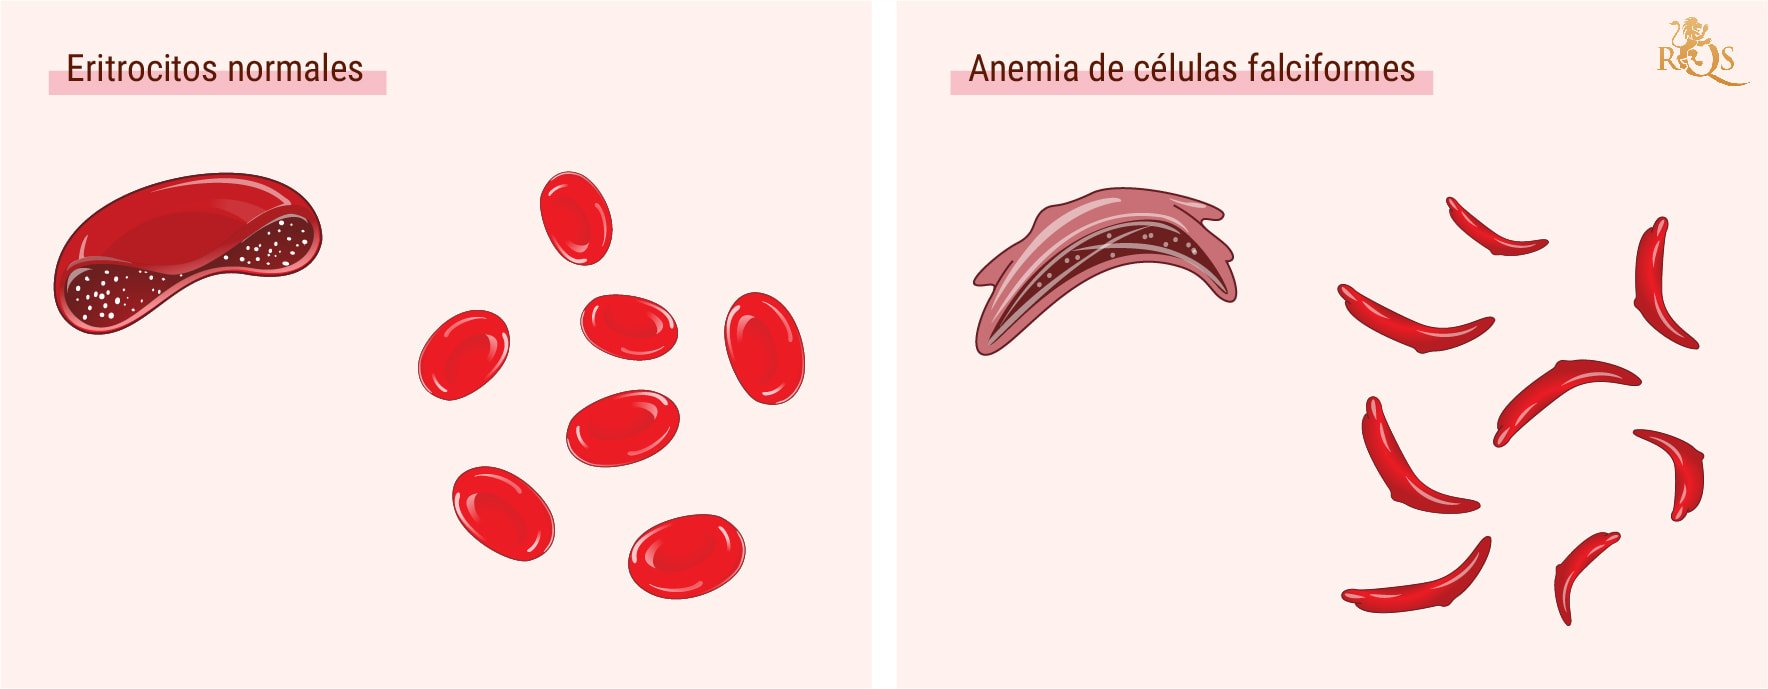 ¿Qué es la anemia de células falciformes?